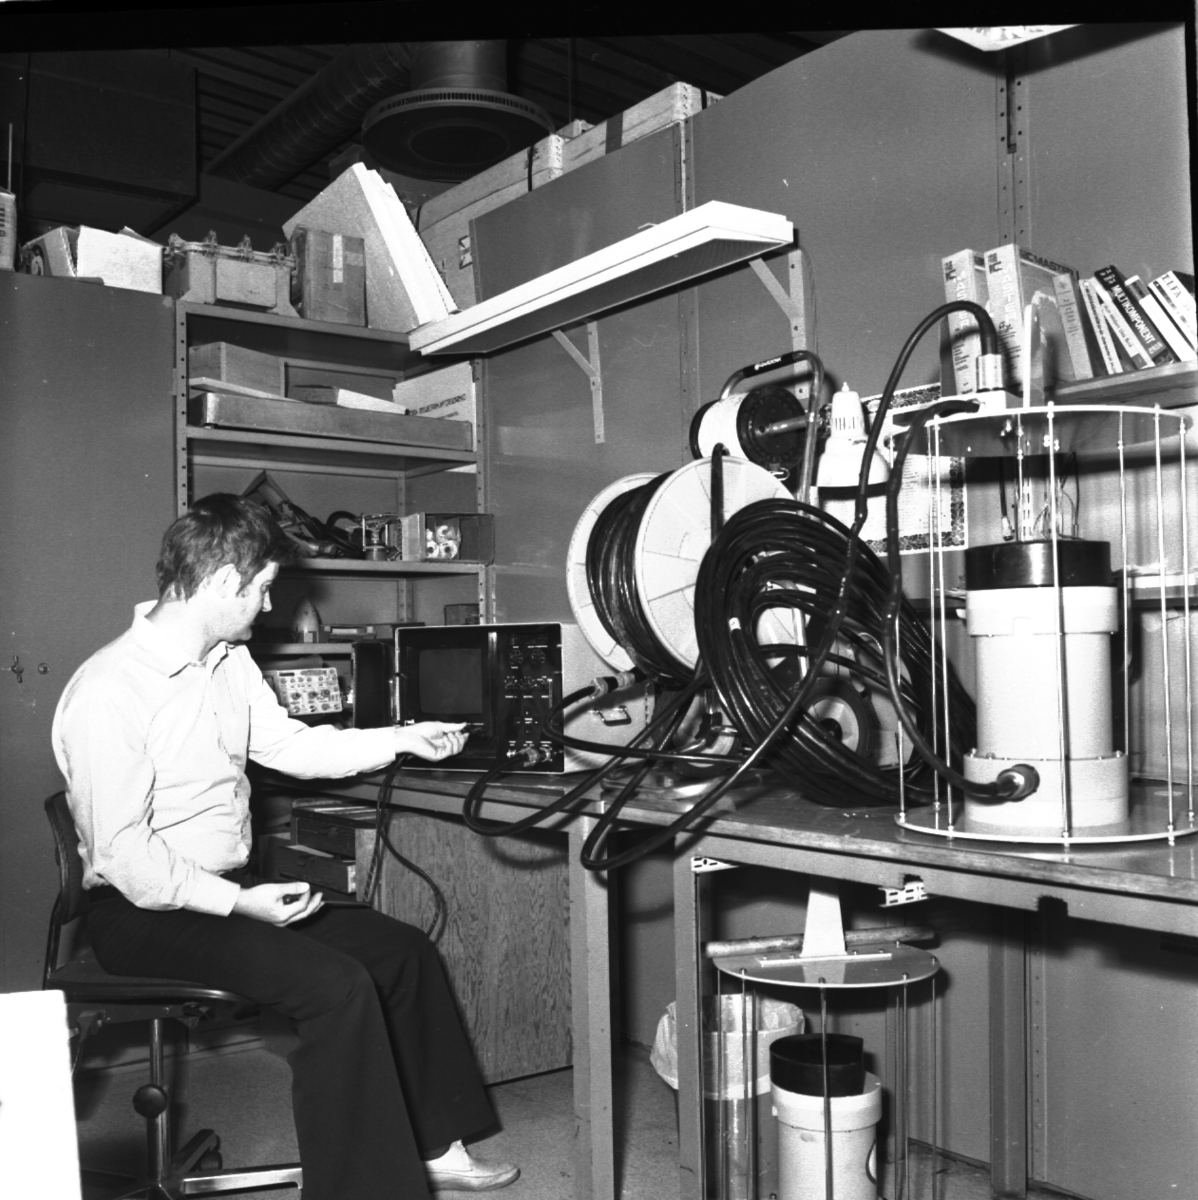 En man sitter på en snurrstol framför en maskin med skärm och kopplar in en sladd. Han sitter i ett rum med sladdar och maskiner på hyllor och bord.